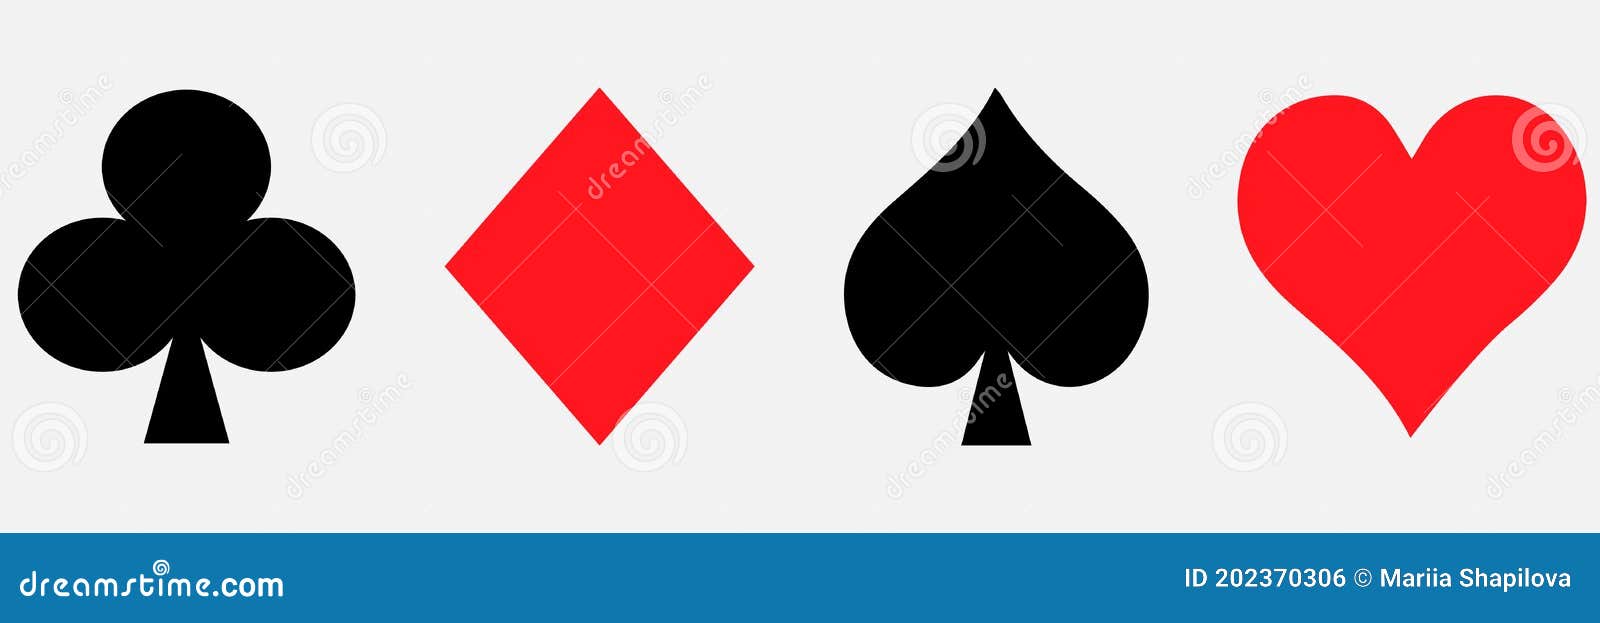 Símbolos cartas de poker y simbolos cartas